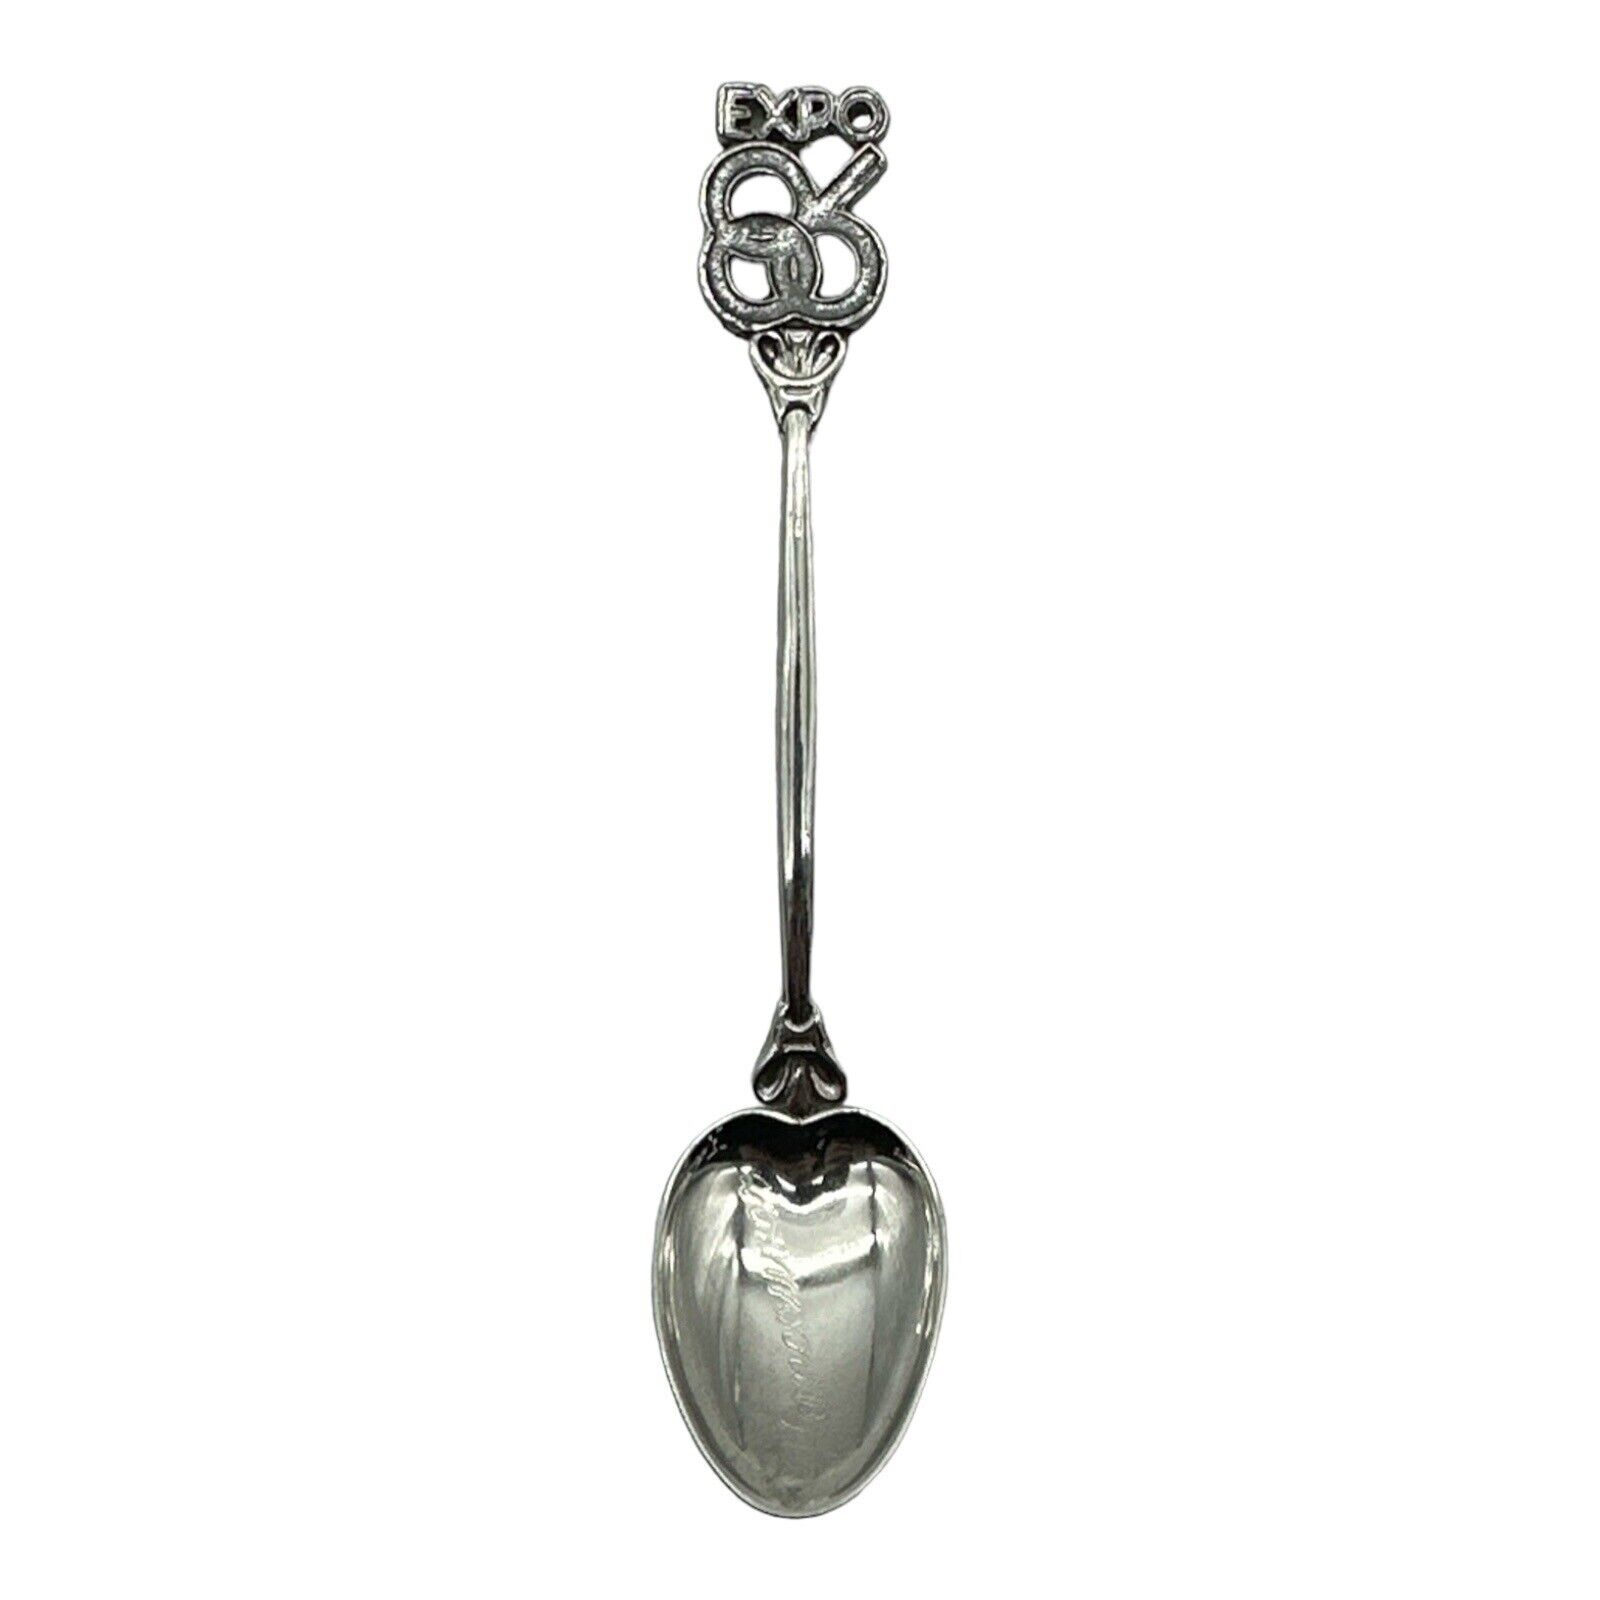 Vancouver Expo 86 Vintage Souvenir Spoon Collectible